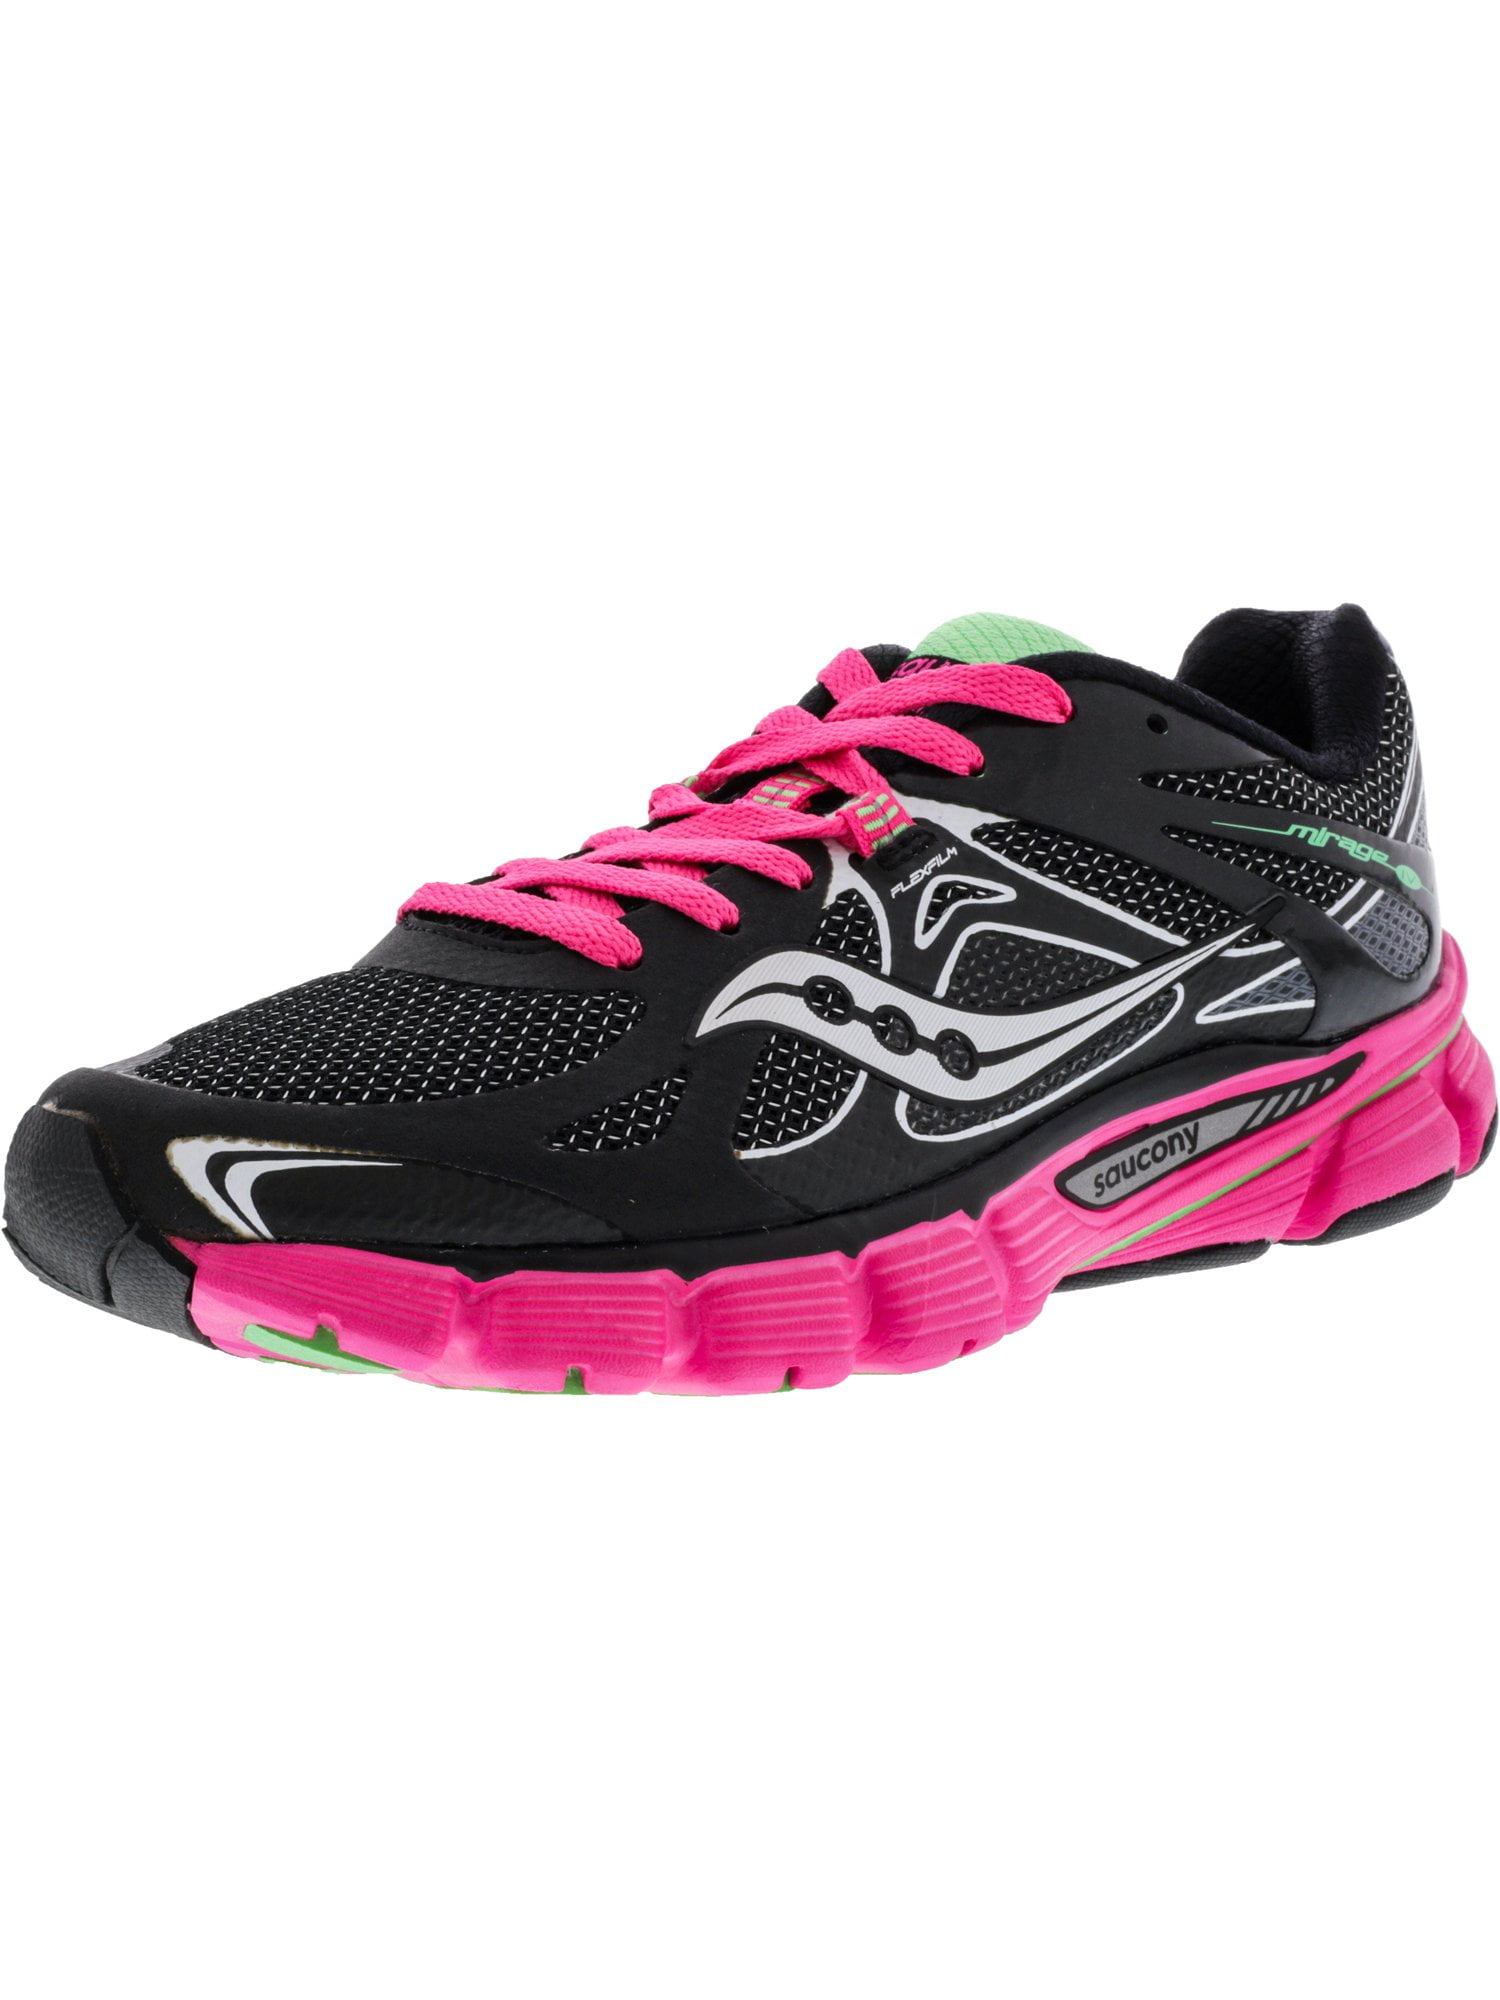 Saucony - Saucony Women's Mirage 4 Black / Pink Green Ankle-High Running  Shoe - 6M - Walmart.com - Walmart.com